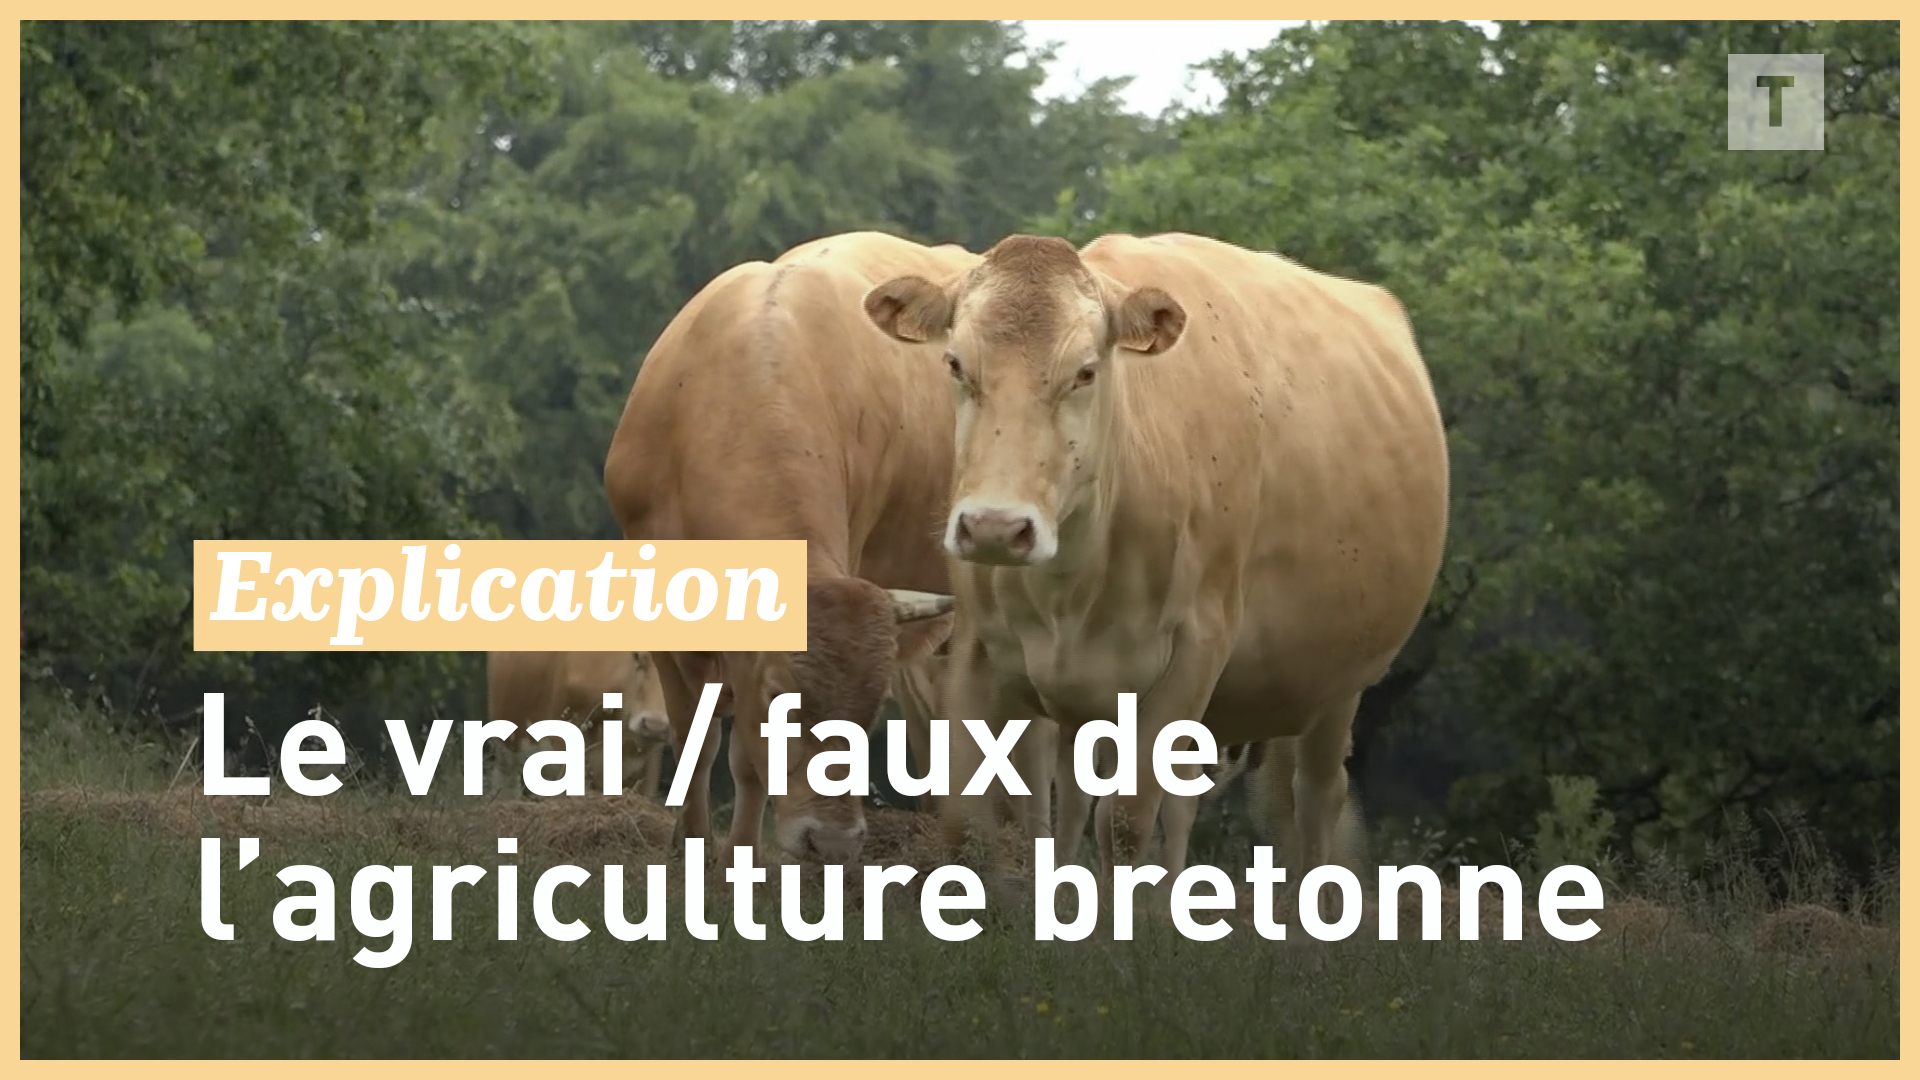 Le vrai faux de l'agriculture bretonne (Le Télégramme)